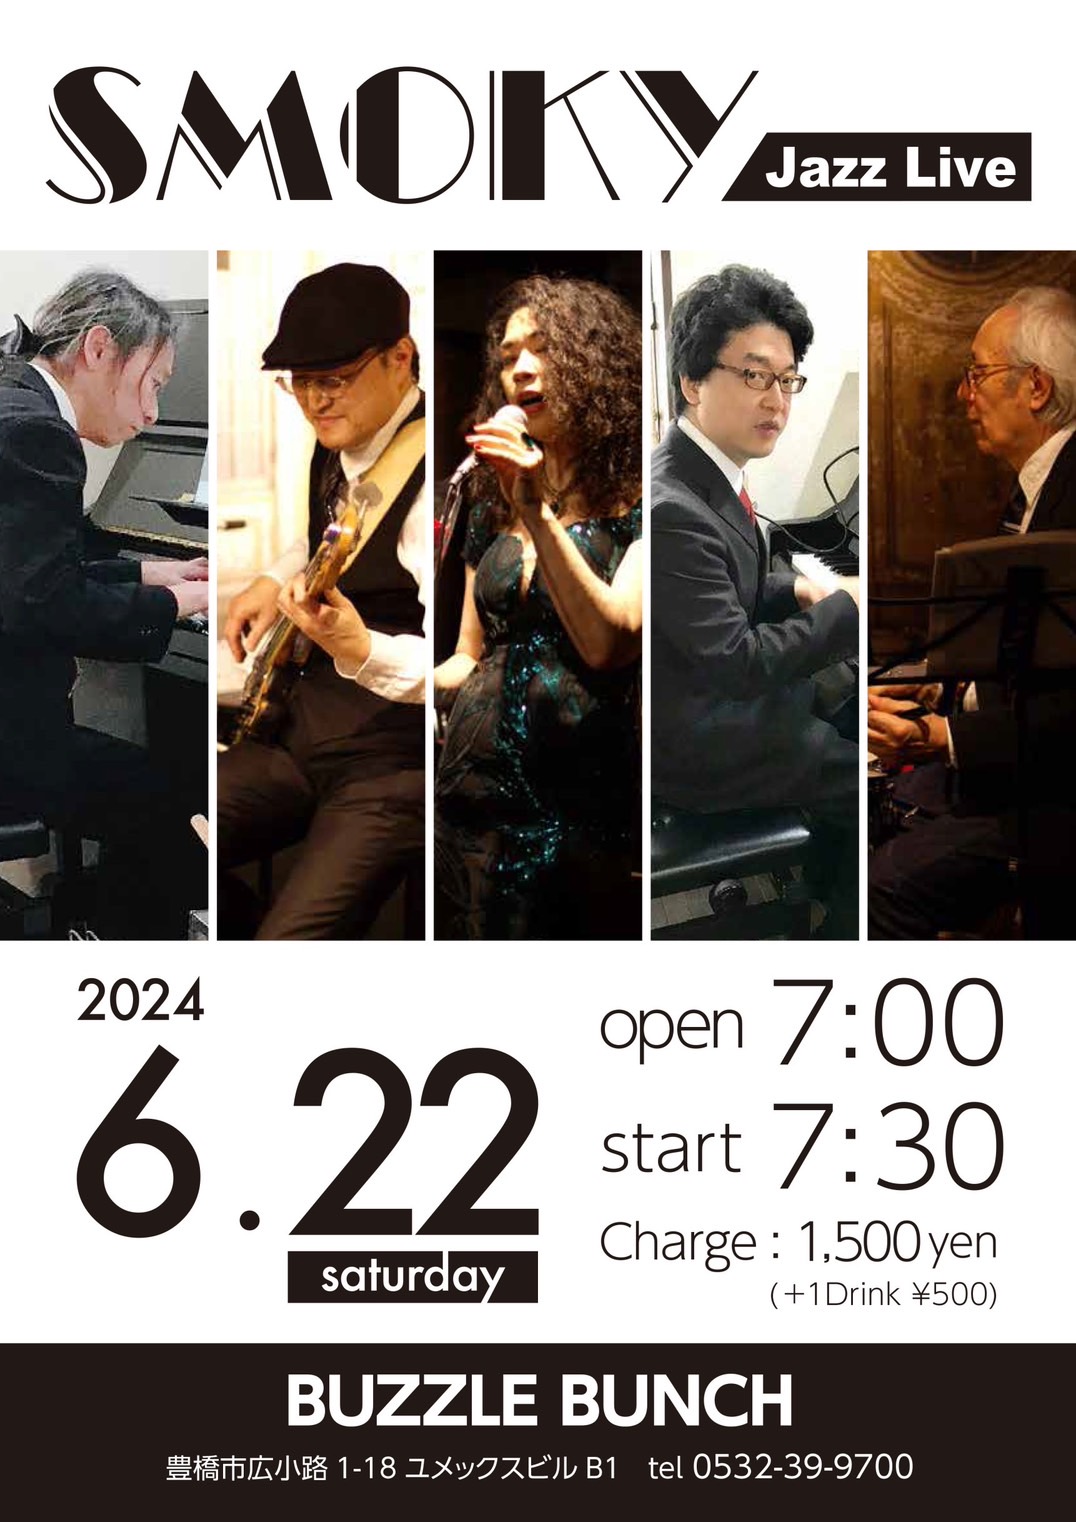 2024年6月22日(Sat) SMOKY Jazz Live